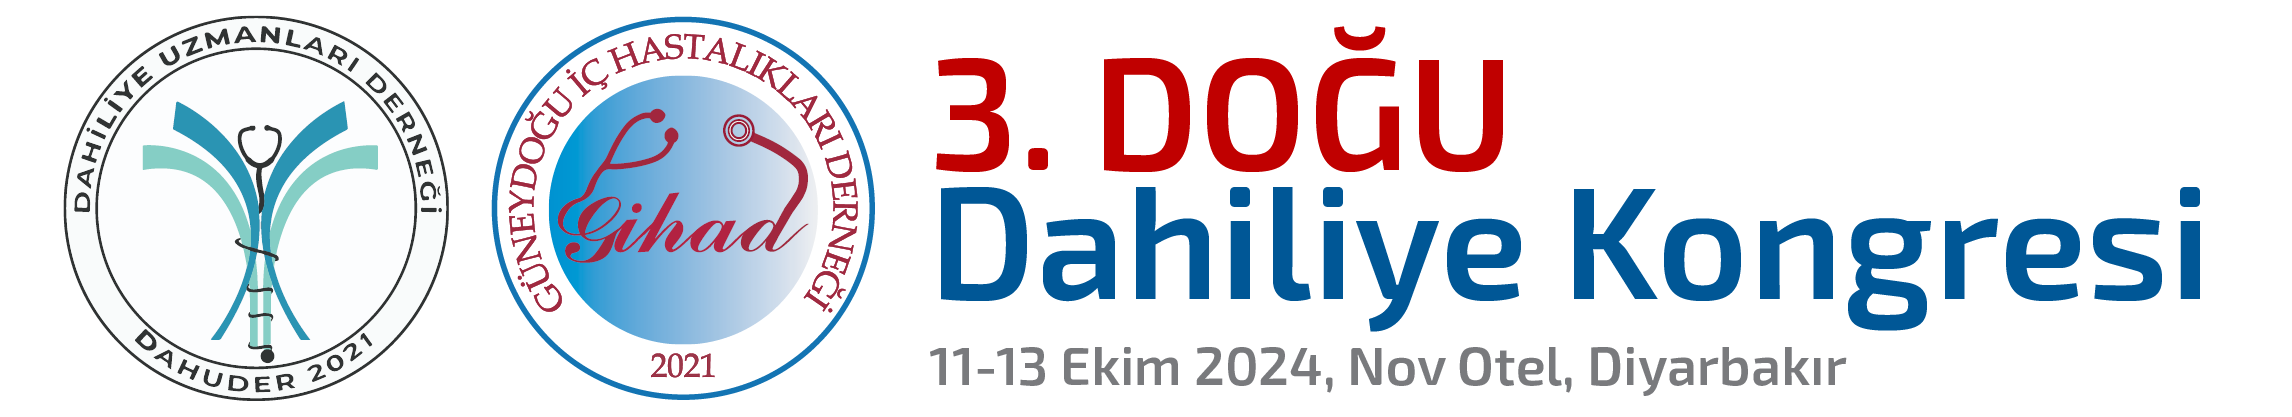 3. Doğu Dahiliye Kongresi - 11-13 Ekim 2024, Diyarbakır